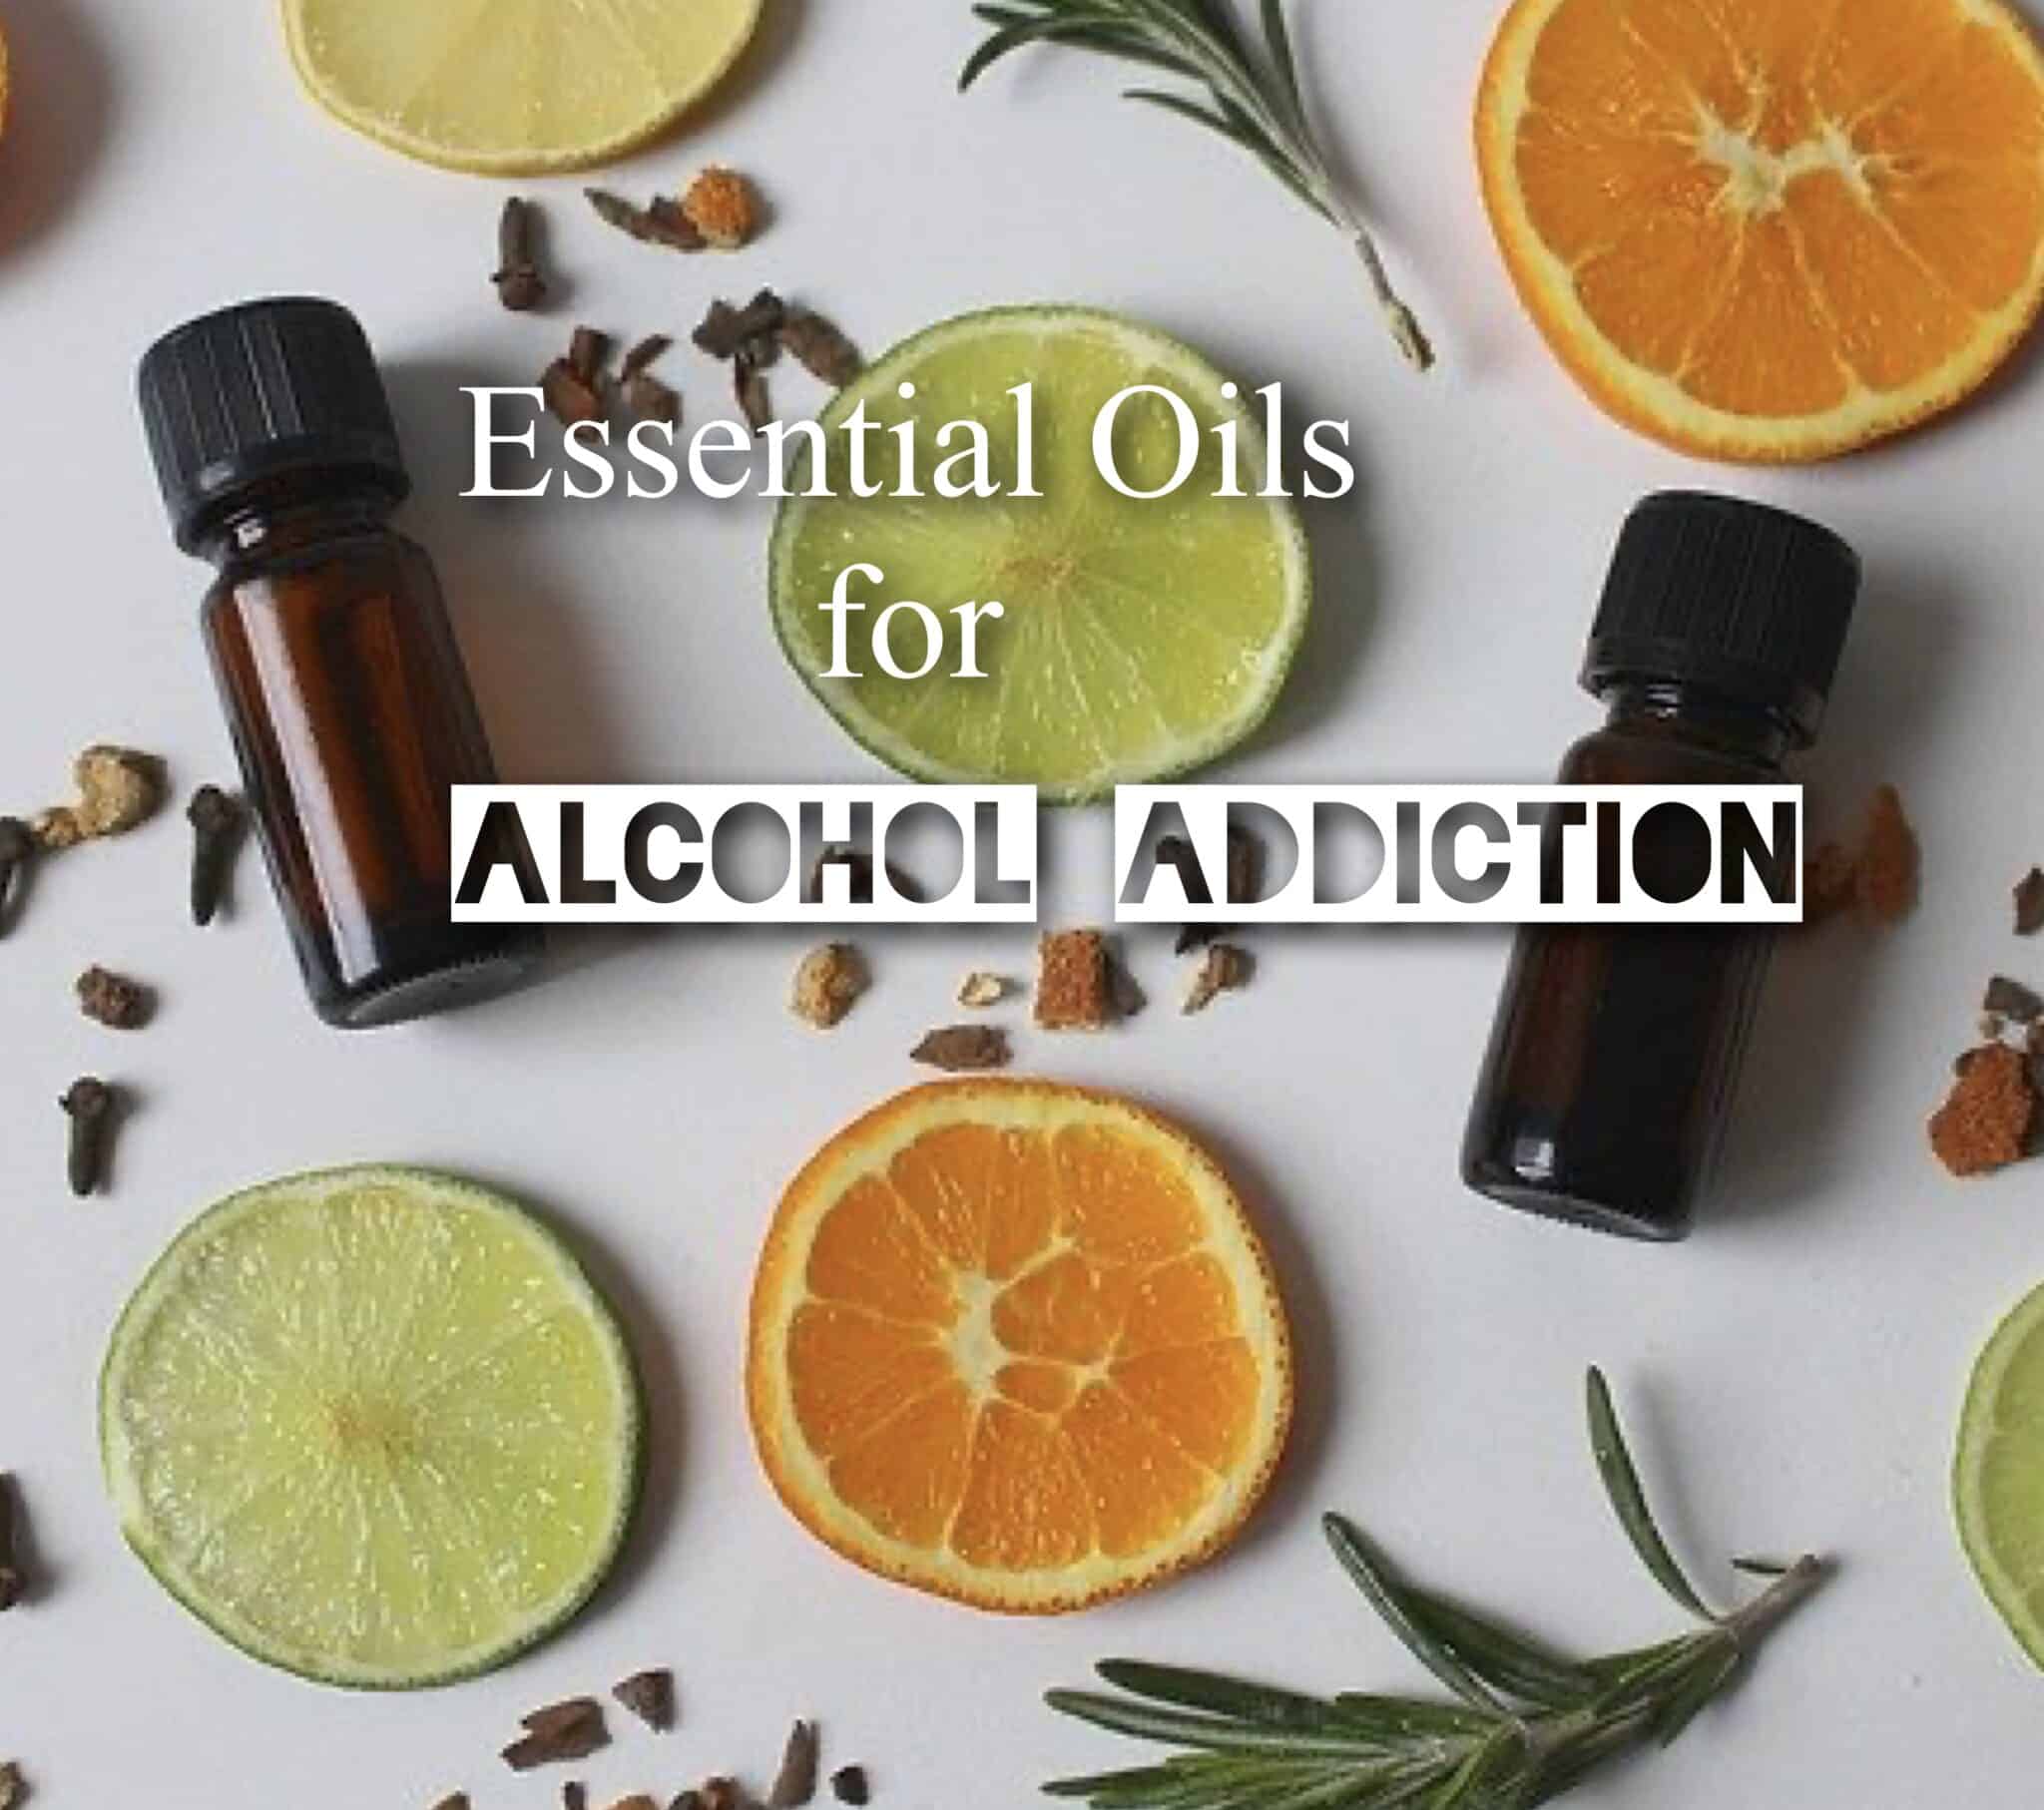 Essential Oils for Alcohol Addiction